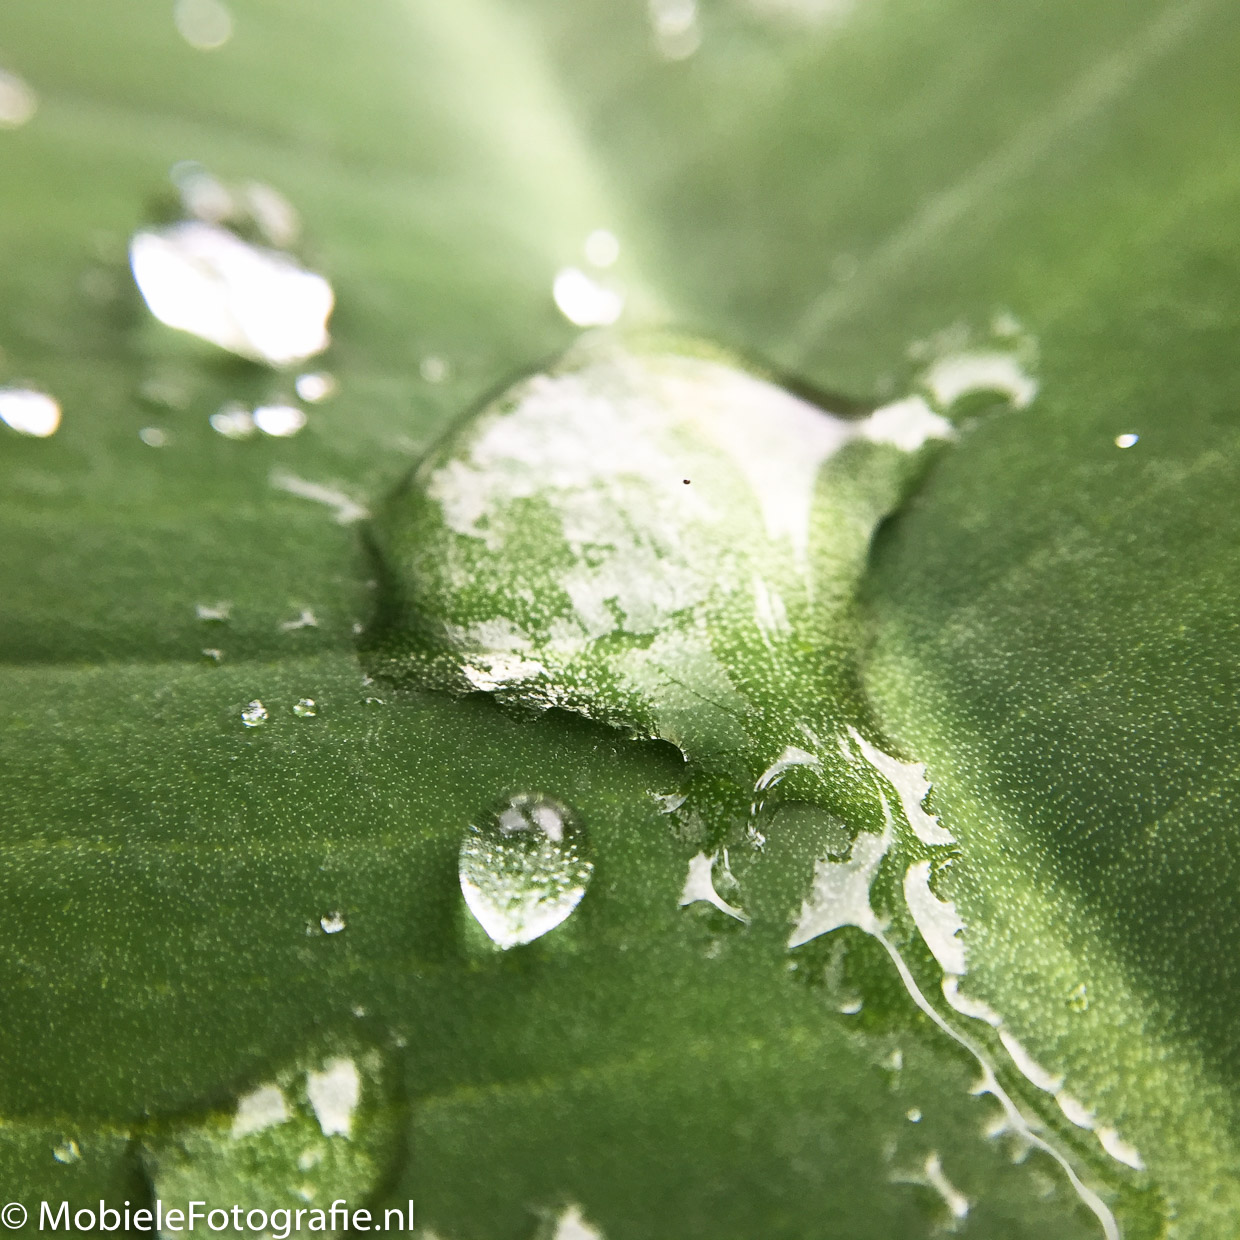 Waterdruppel op blaadje na een flinke regenbui. [iPhone 6]